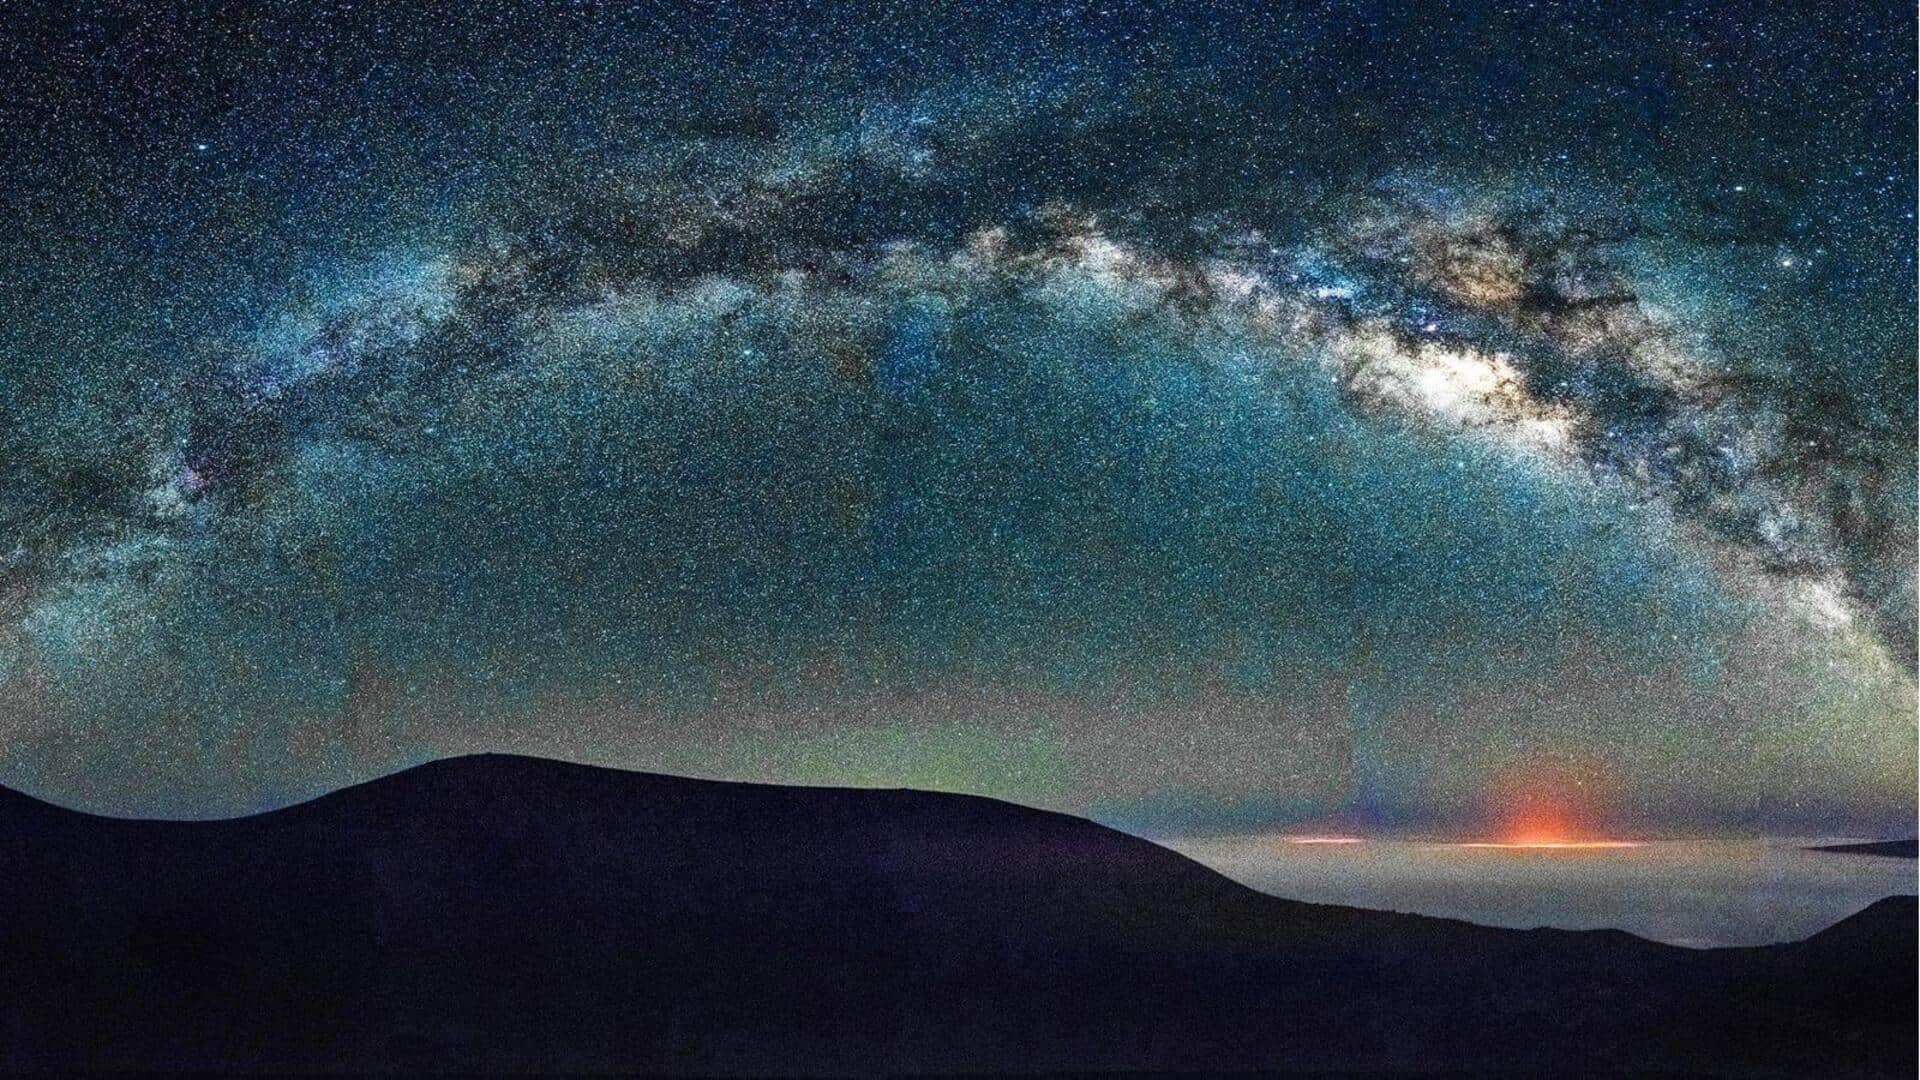 Ikuti petualangan mengamati bintang di Mauna Kea, Hawaii 